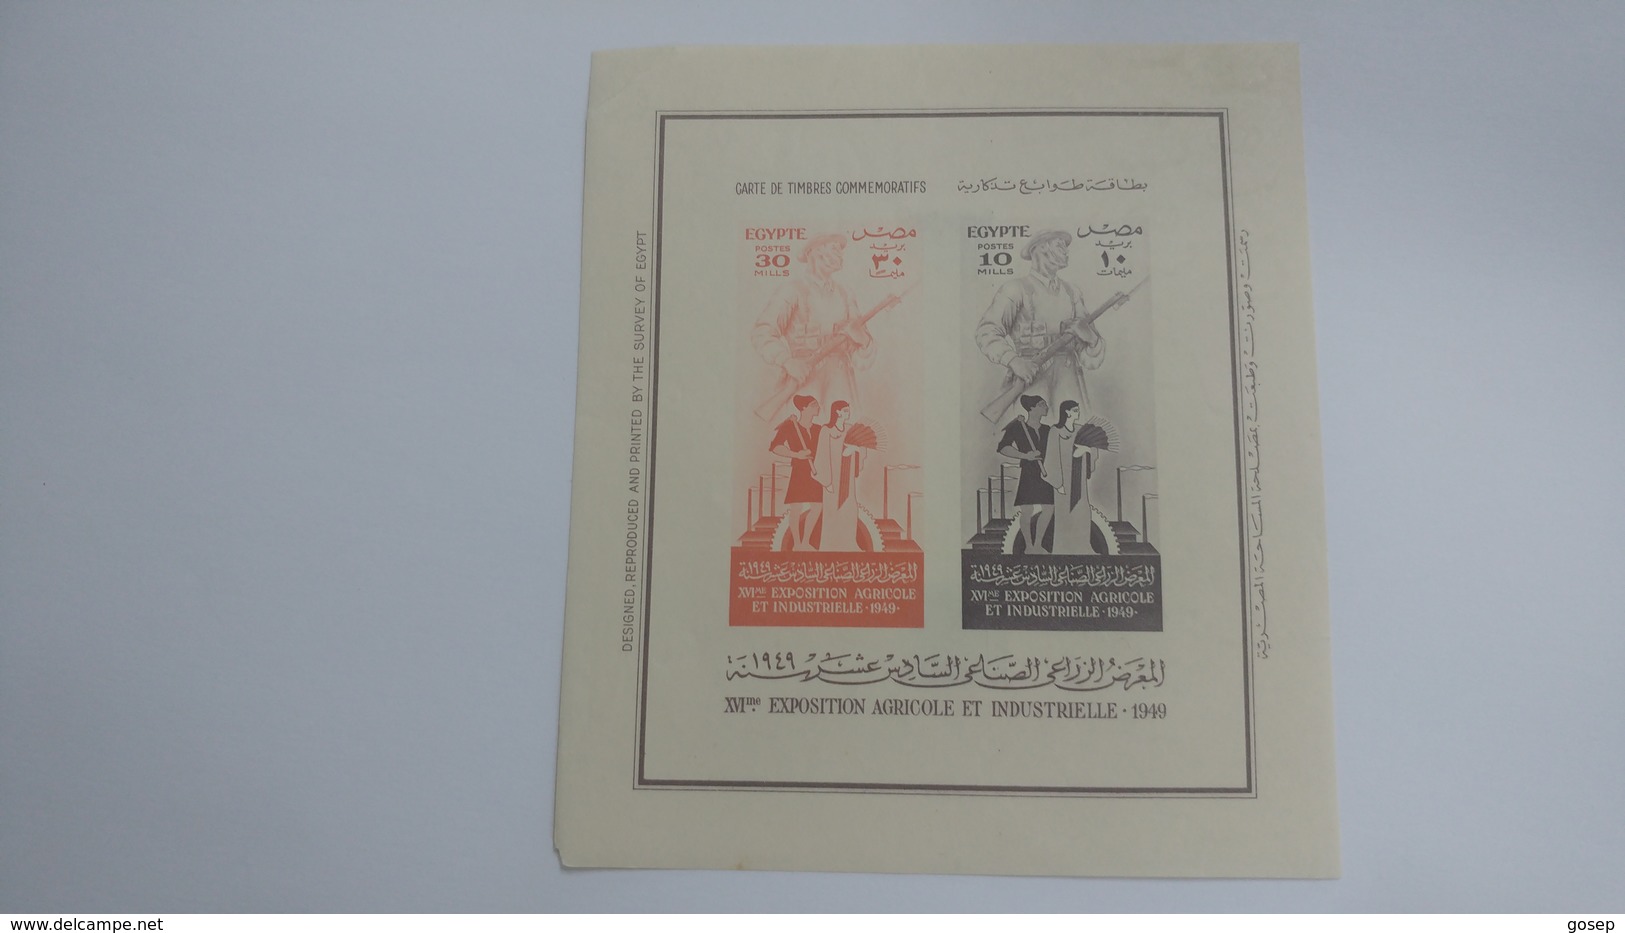 Egypte-xvi Me Exposition Agricole Et Industrielle1949-(2stamps)-mint - Blocs-feuillets